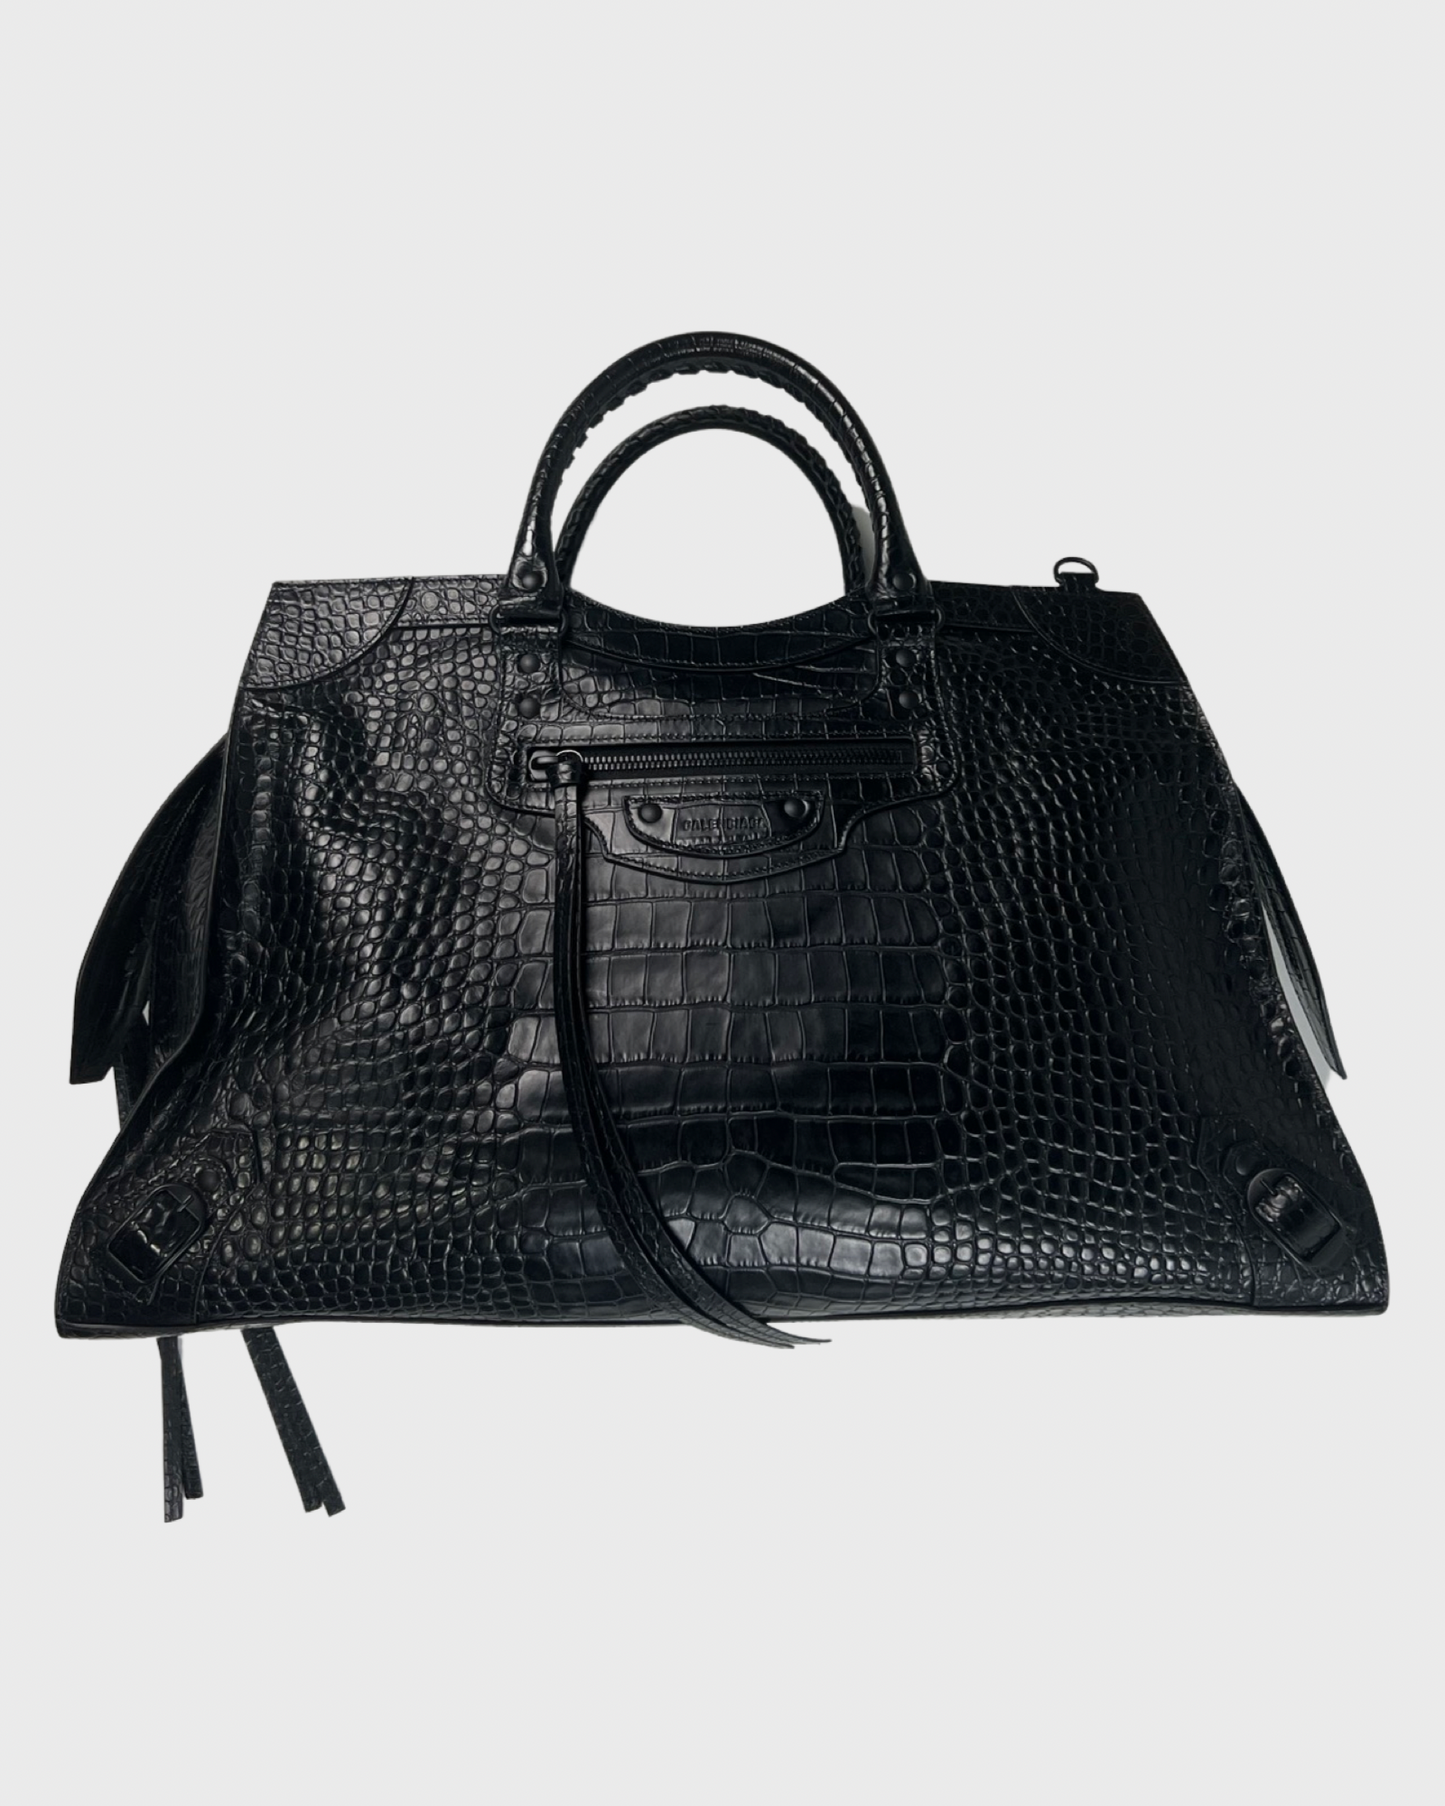 Balenciaga Black Croc Nano Classic City Bag